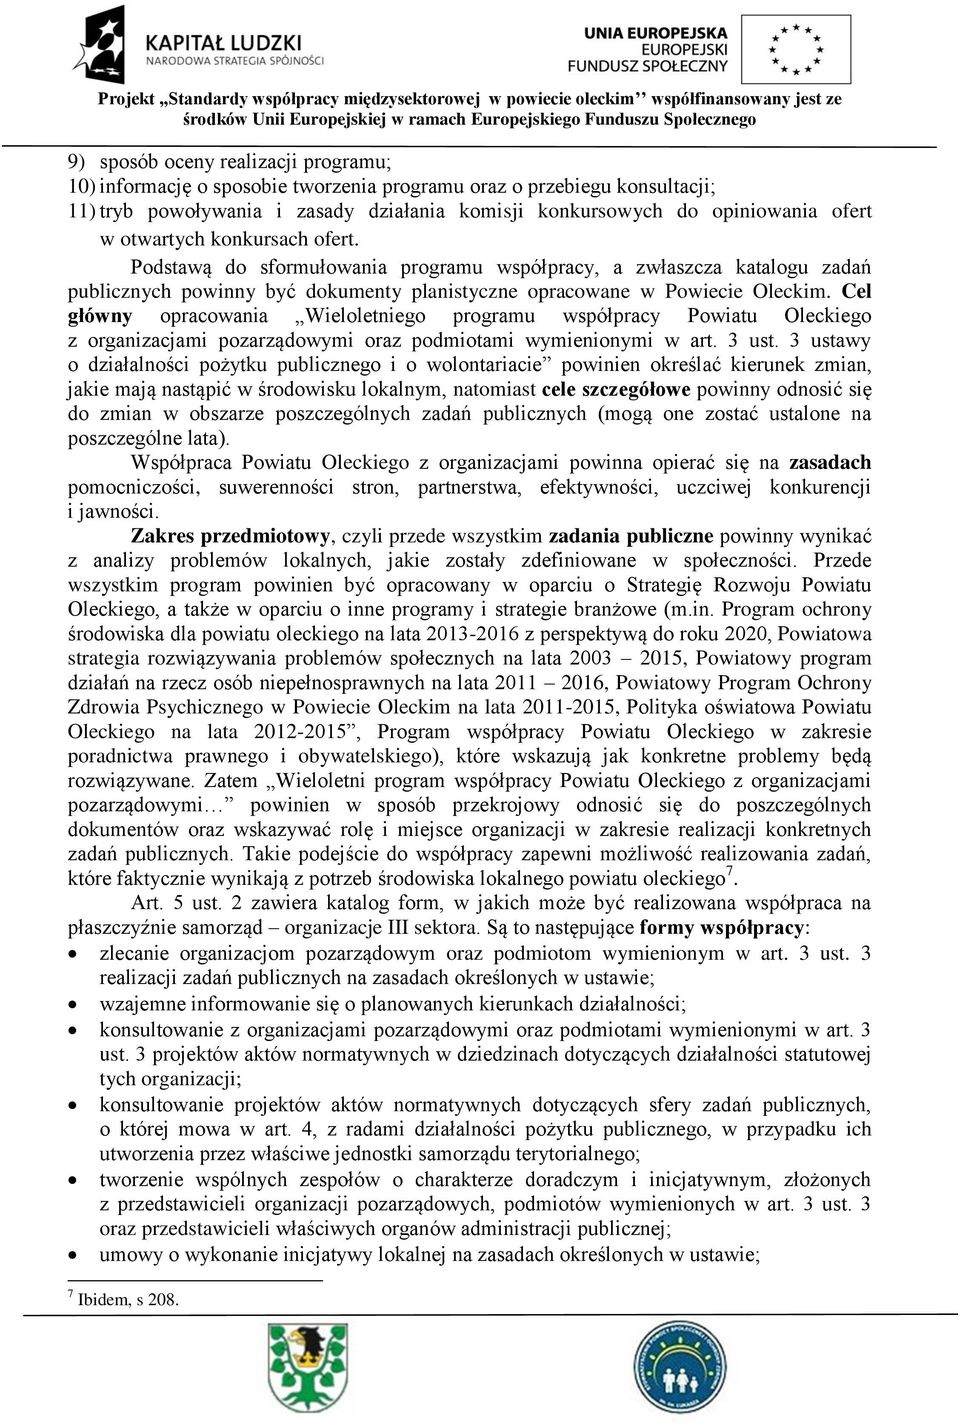 Cel główny opracowania Wieloletniego Powiatu Oleckiego z organizacjami pozarządowymi oraz podmiotami wymienionymi w art. 3 ust.